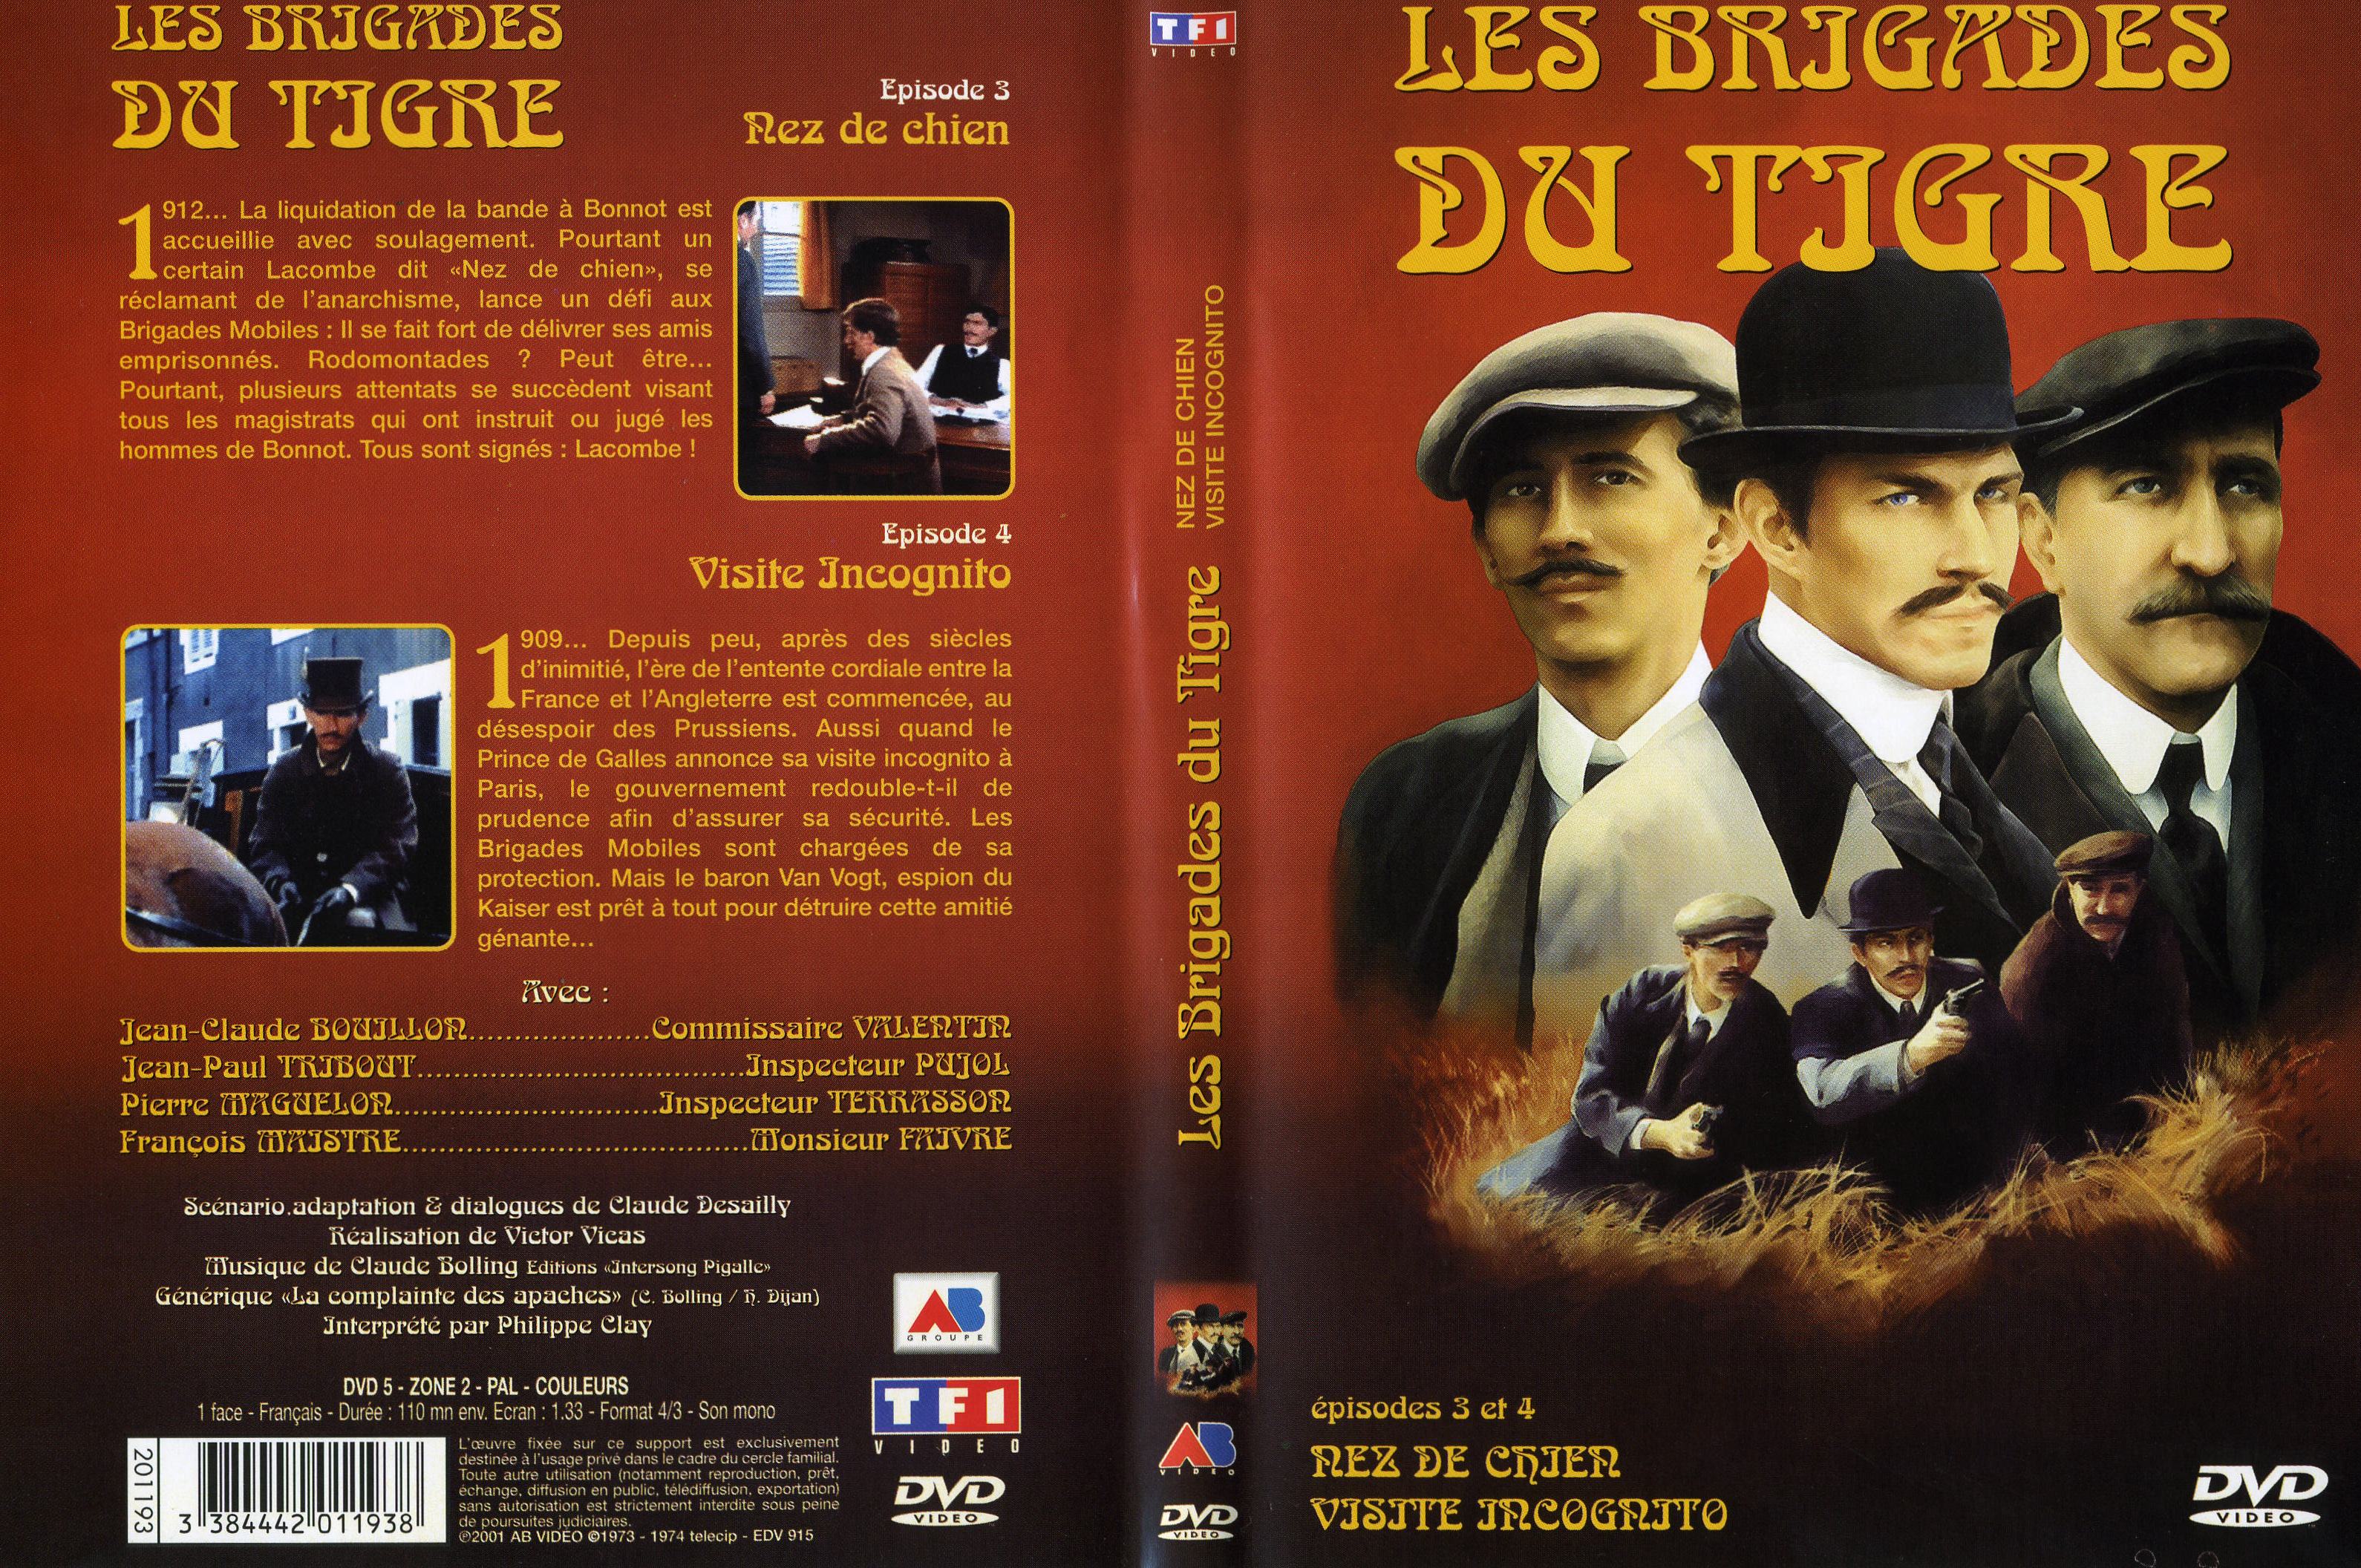 Jaquette DVD Les brigades du tigre vol 2